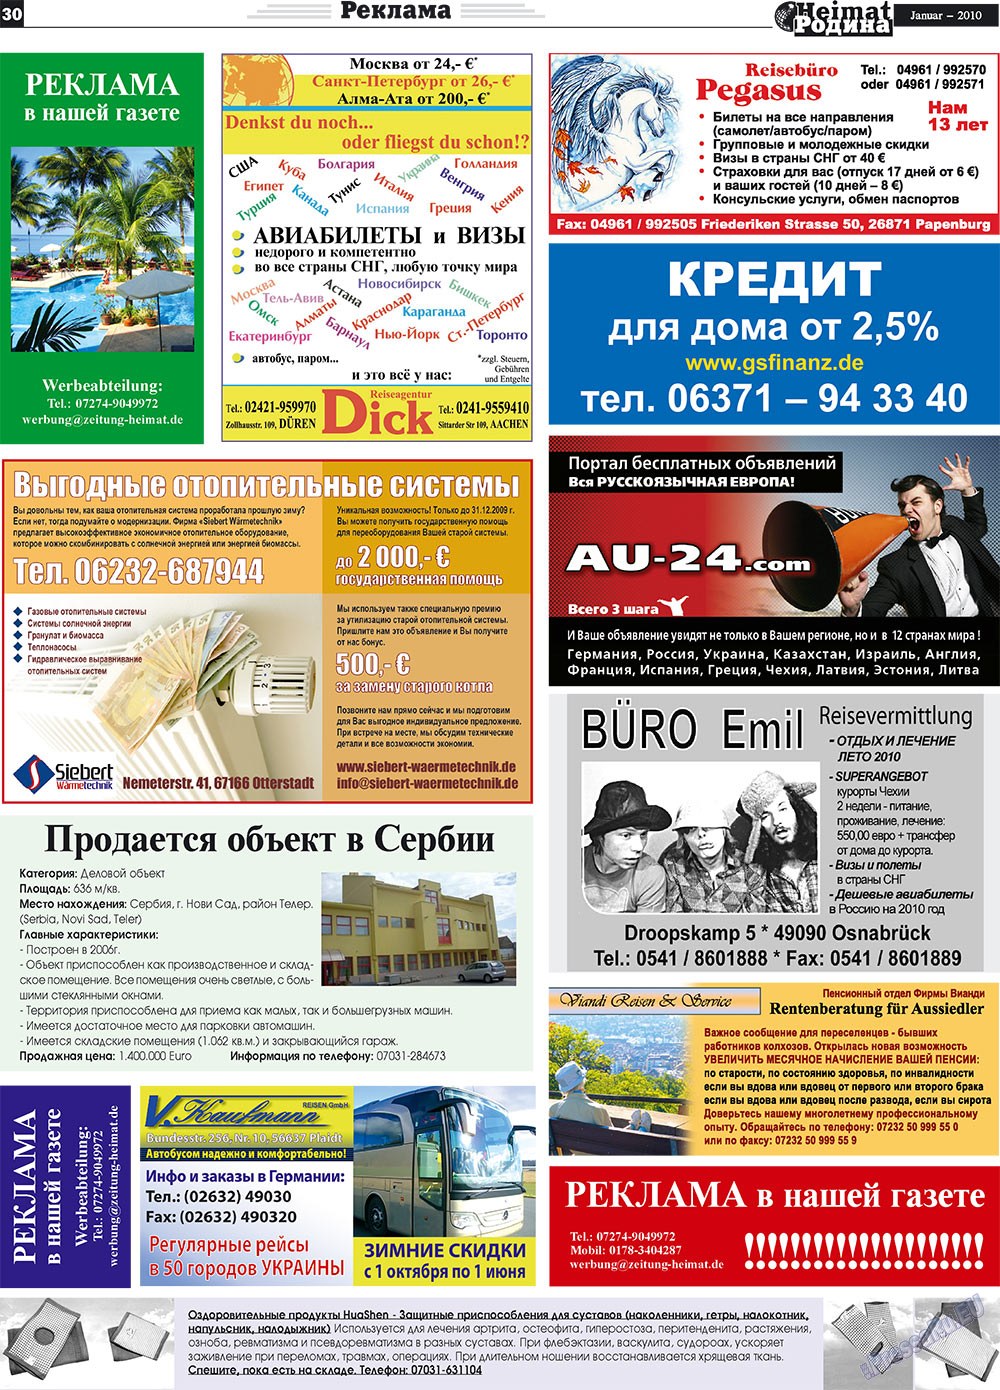 Heimat-Родина (газета). 2010 год, номер 1, стр. 30